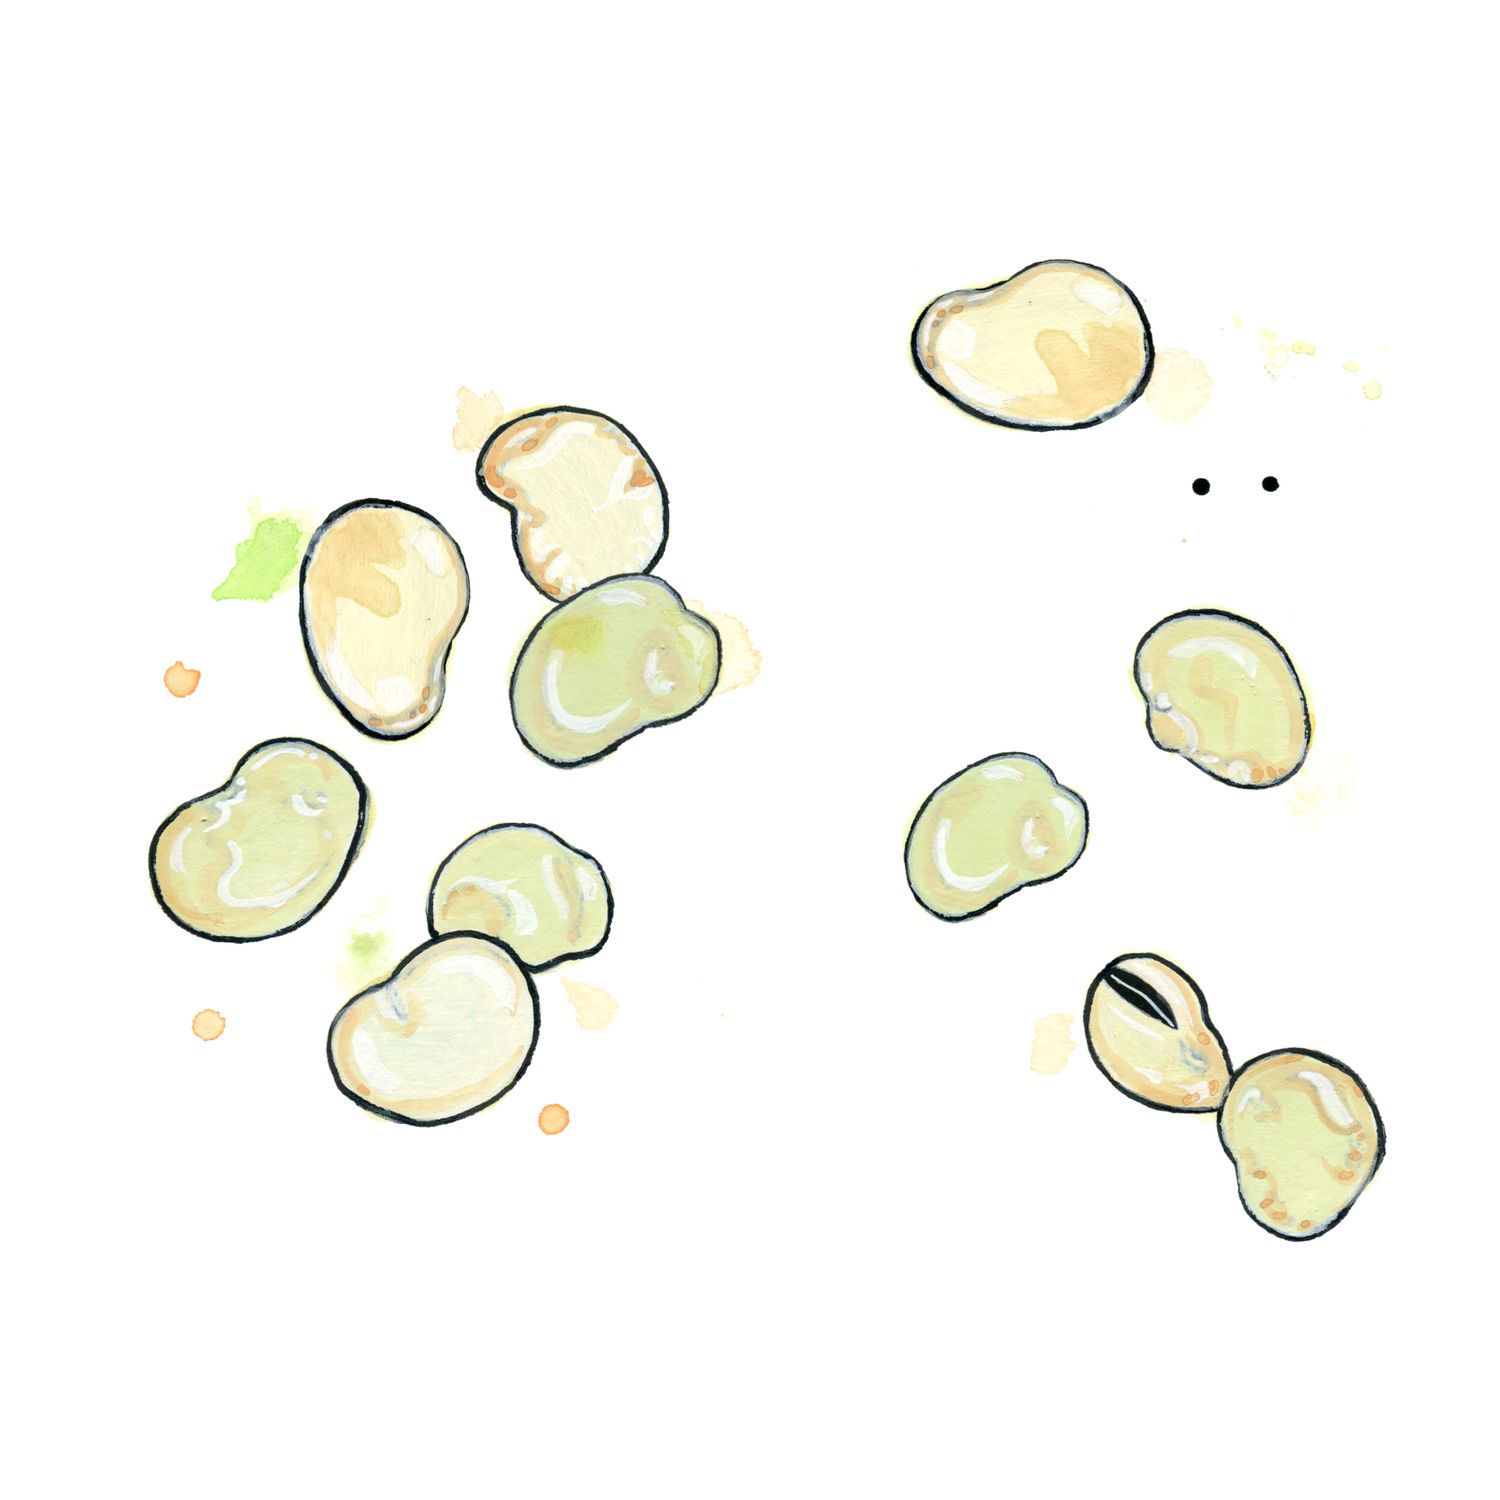 Fava beans illustration